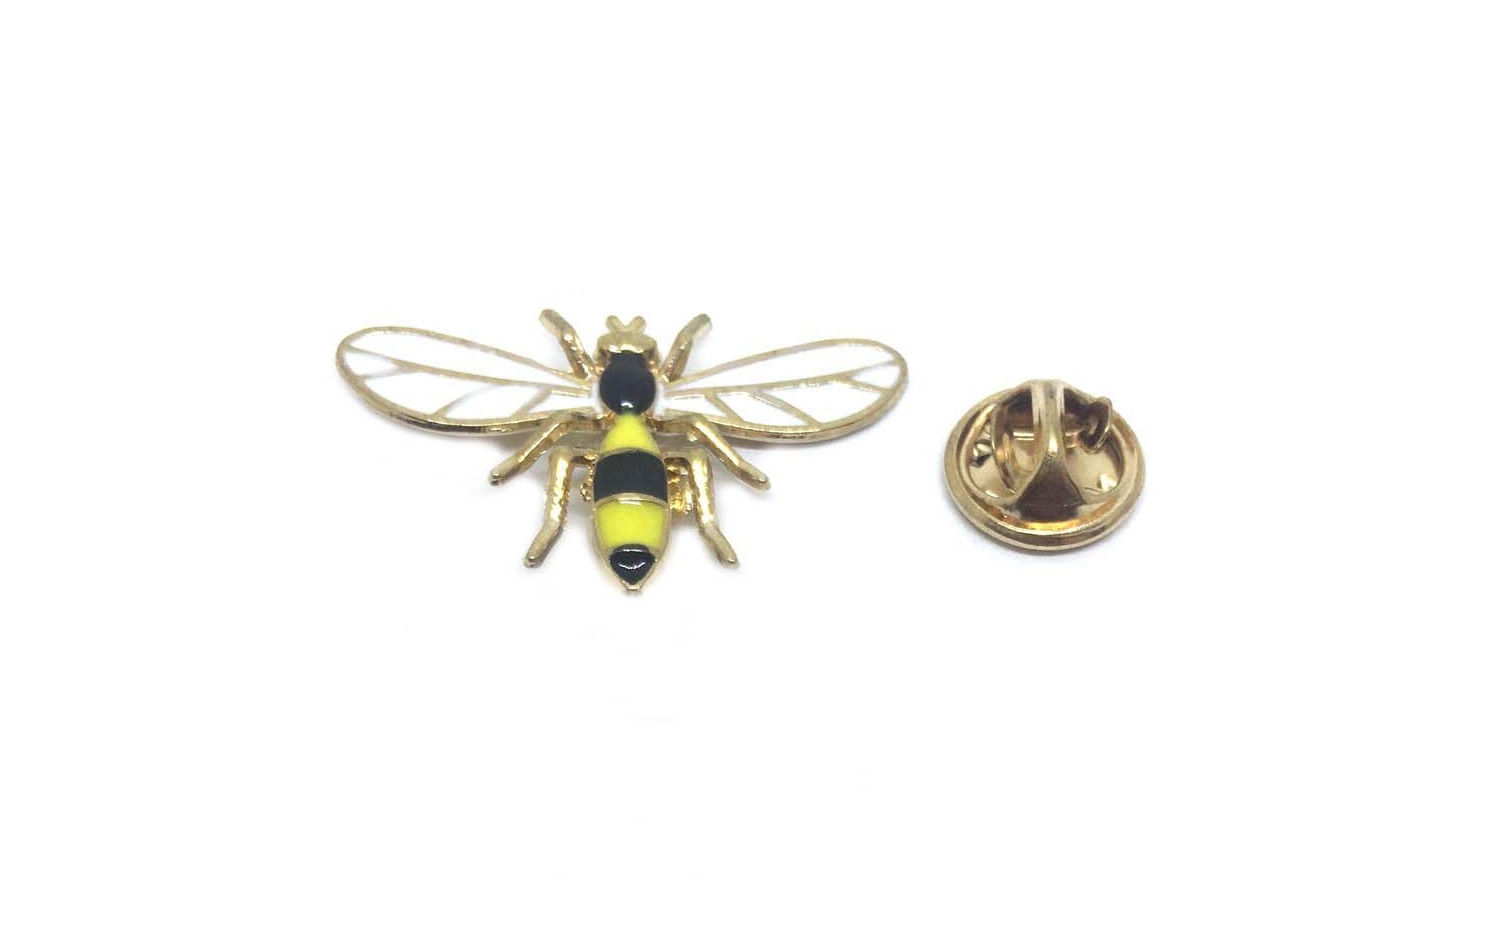 Bee Pins